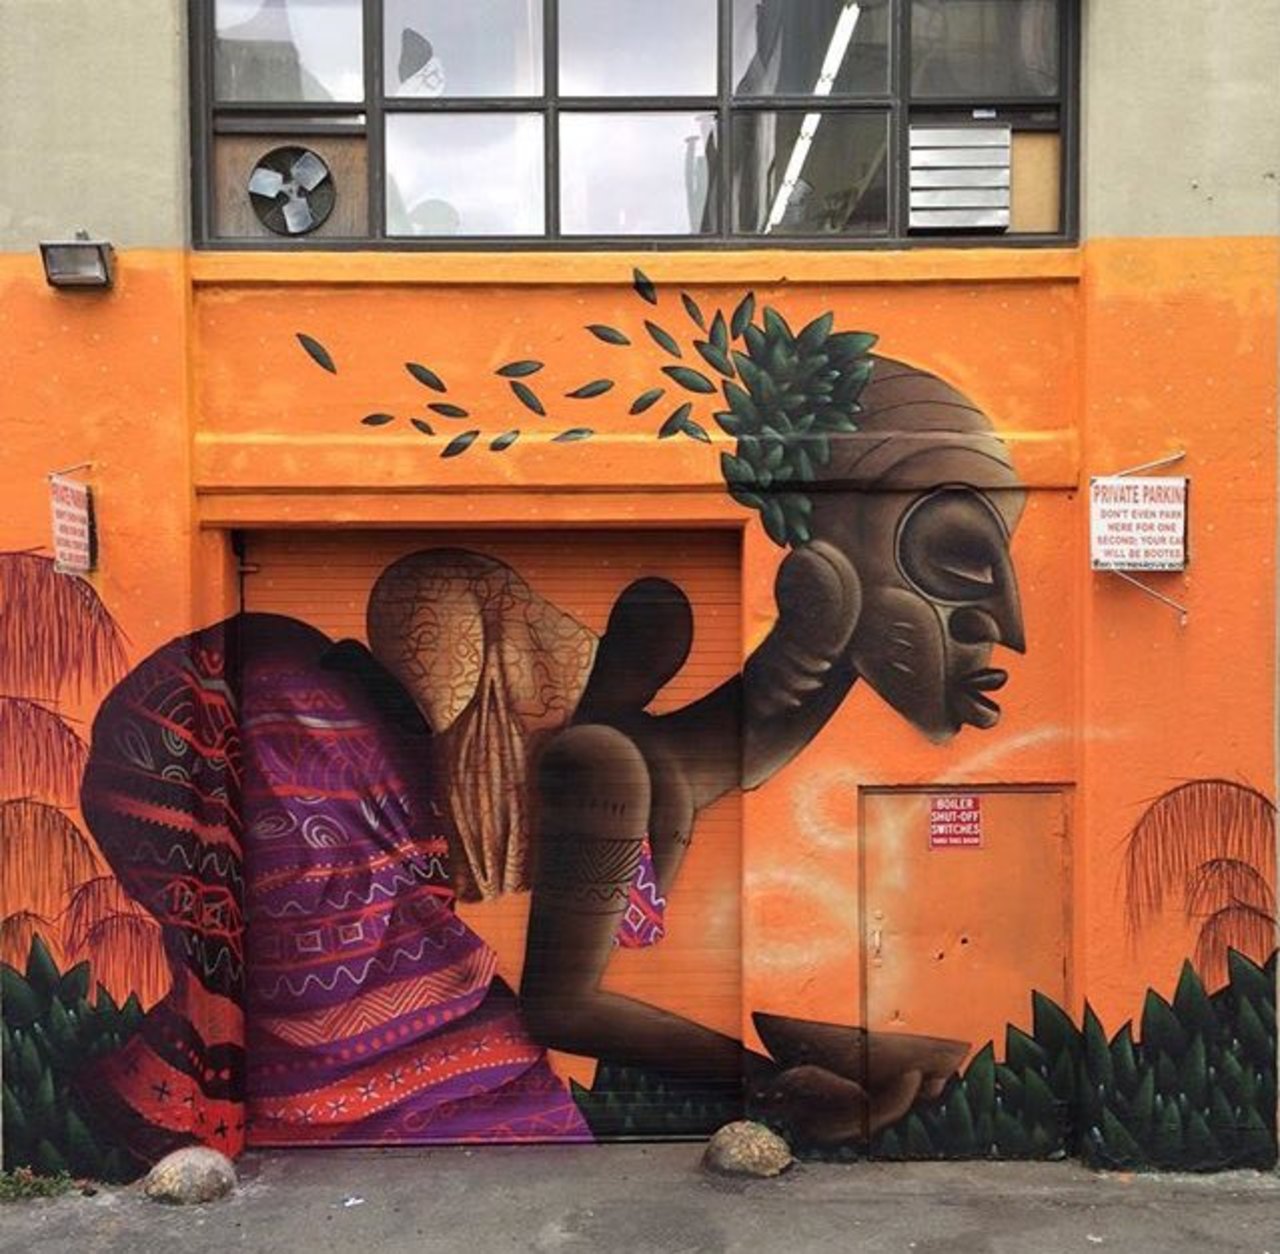 RT @modablogger9: New Street Art by Alexandre Keto in NYC 

#art #graffiti #mural #streetart https://t.co/mkuaYxk0f5